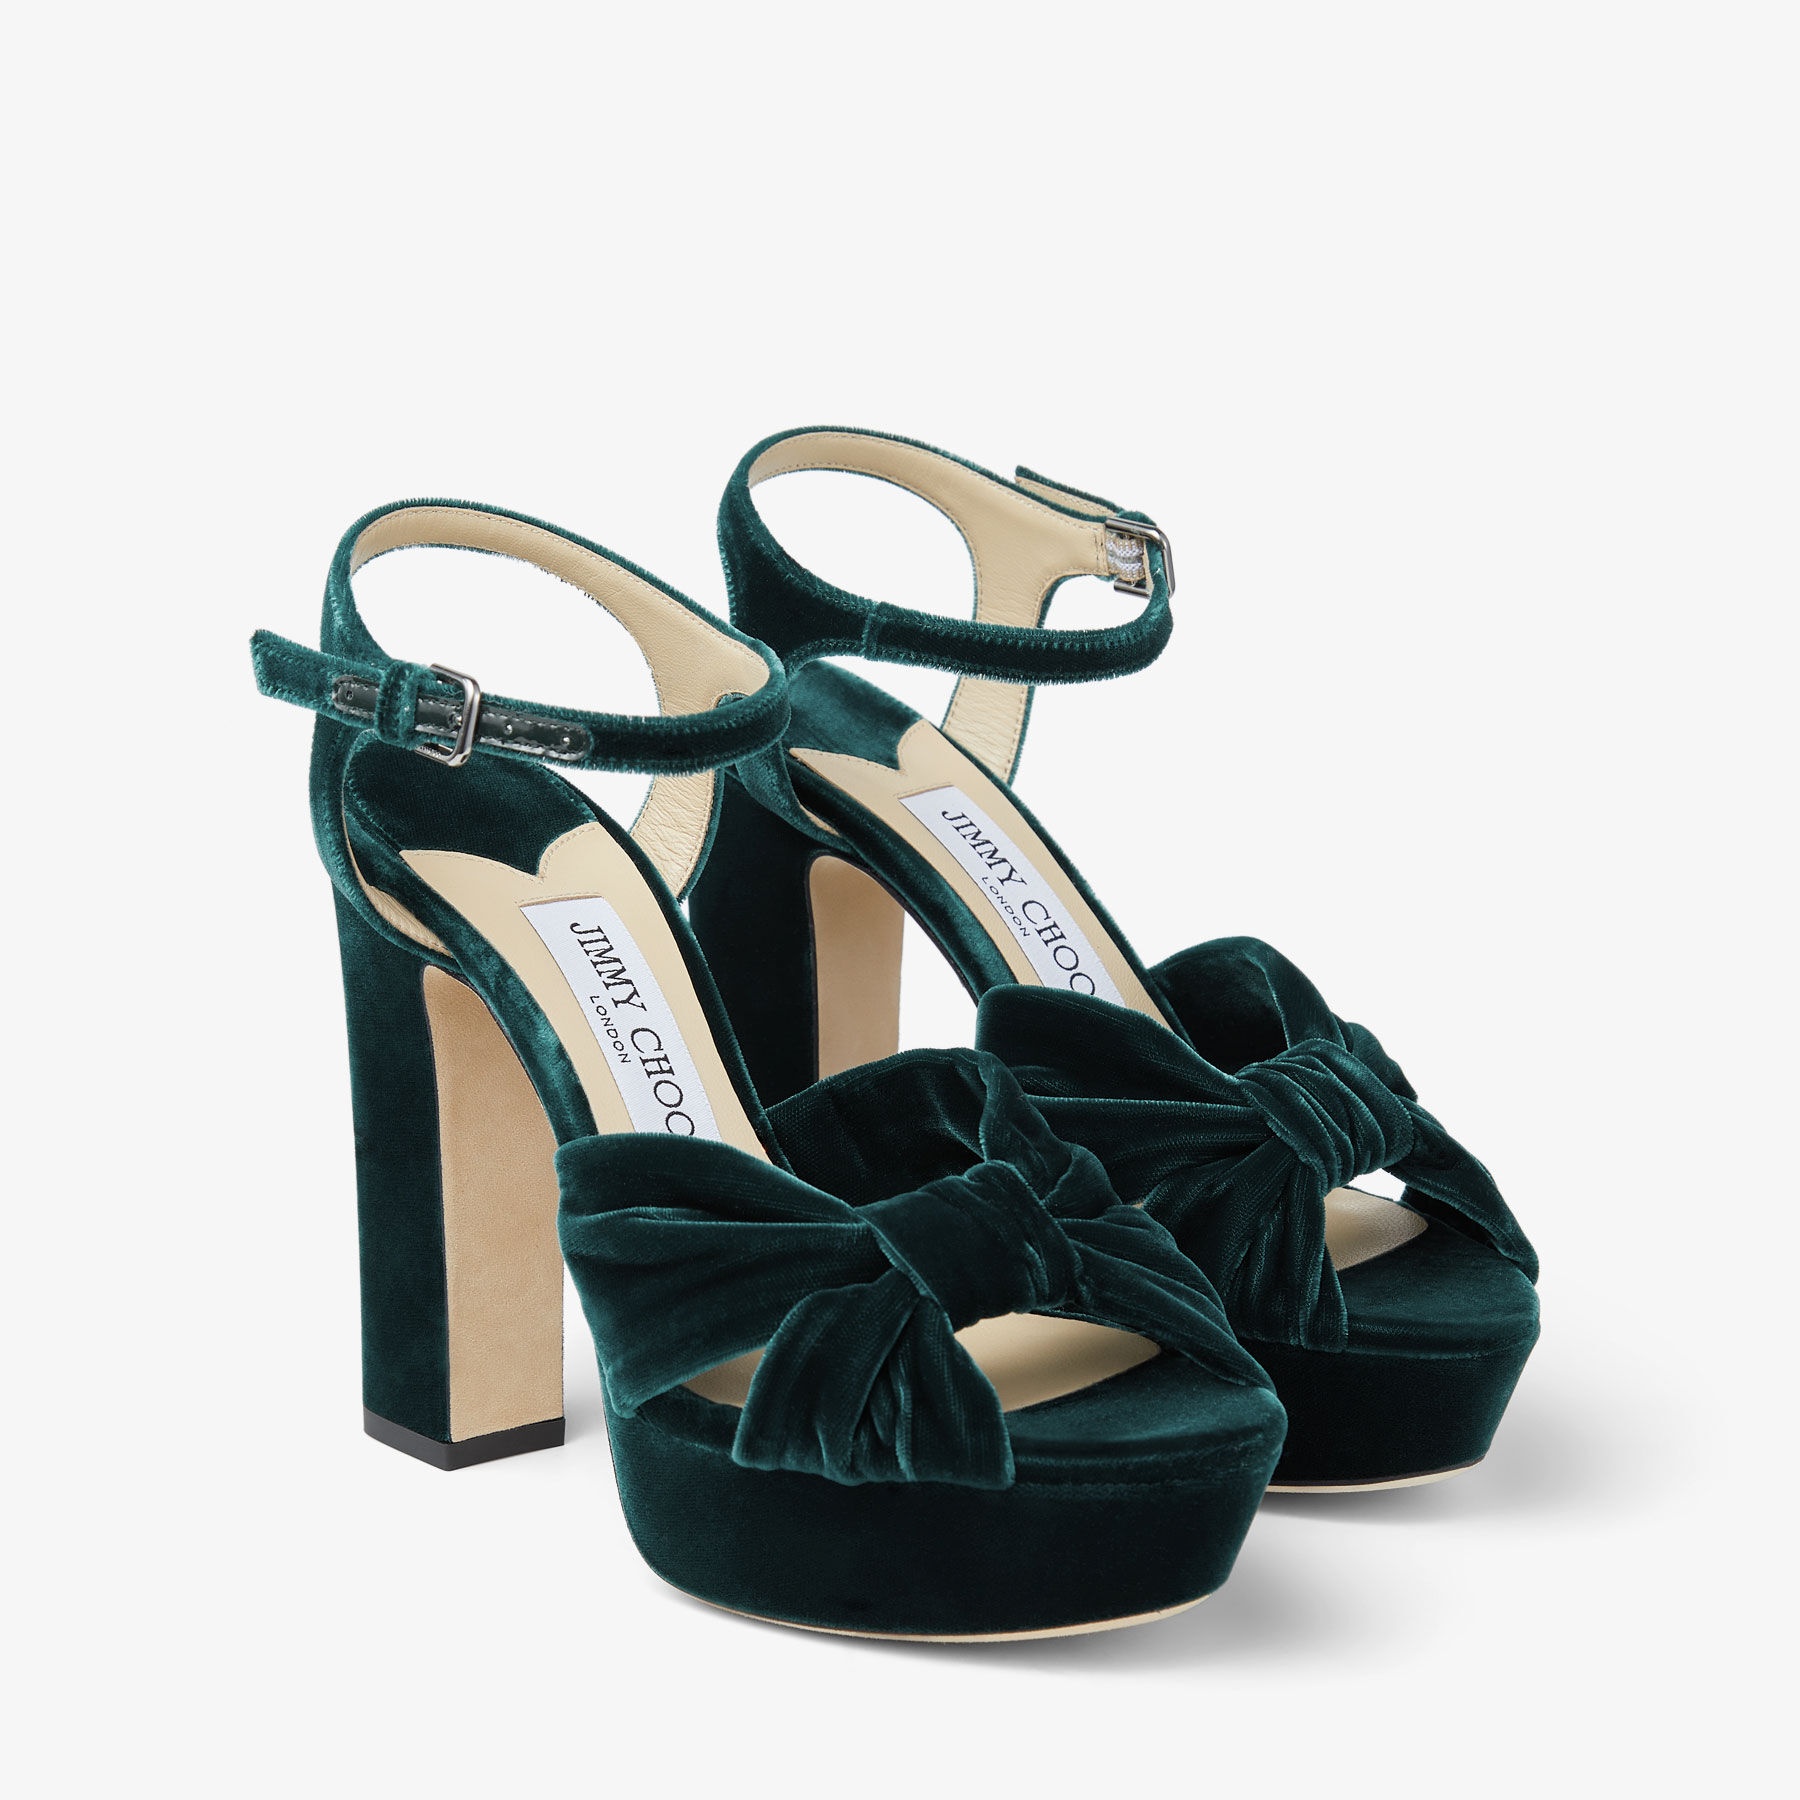 Heloise 120
Dark Green Velvet Platform Sandals - 3